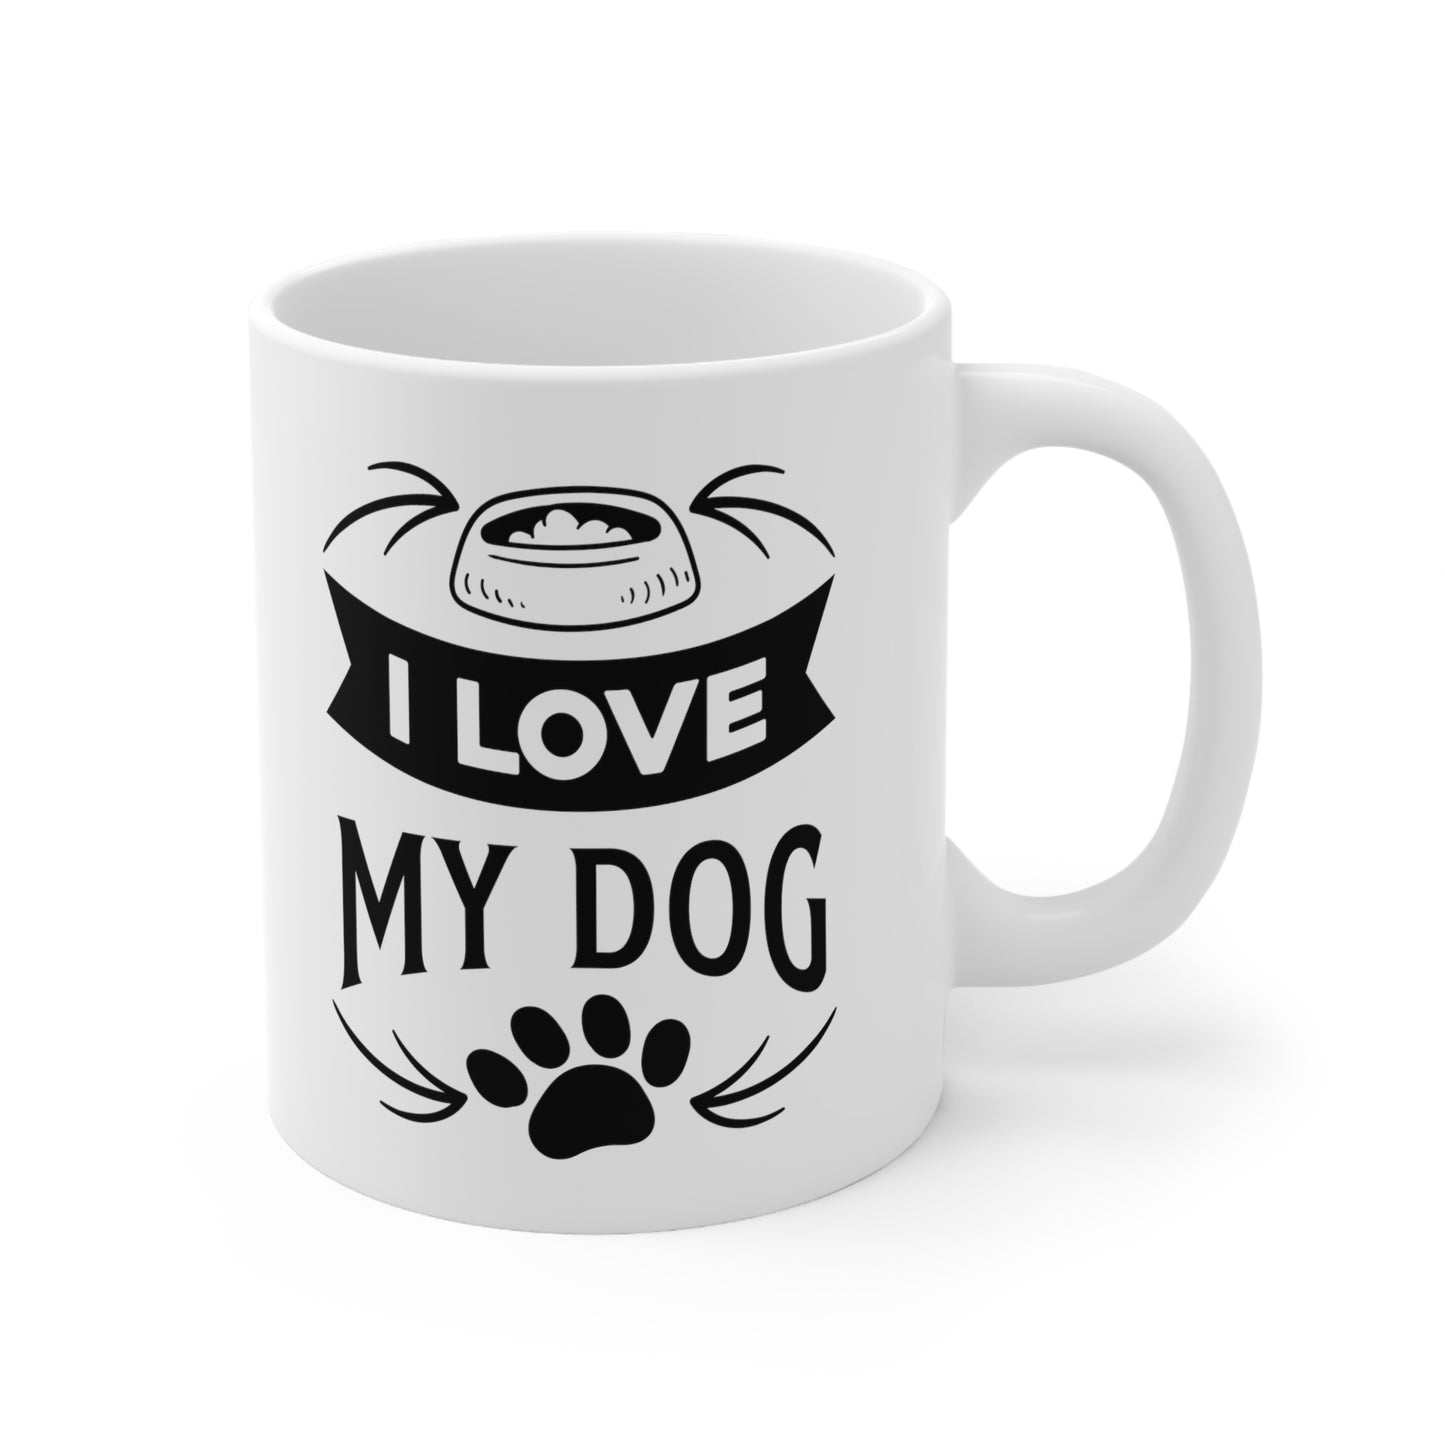 I Love My Dog Ceramic Mug 11oz